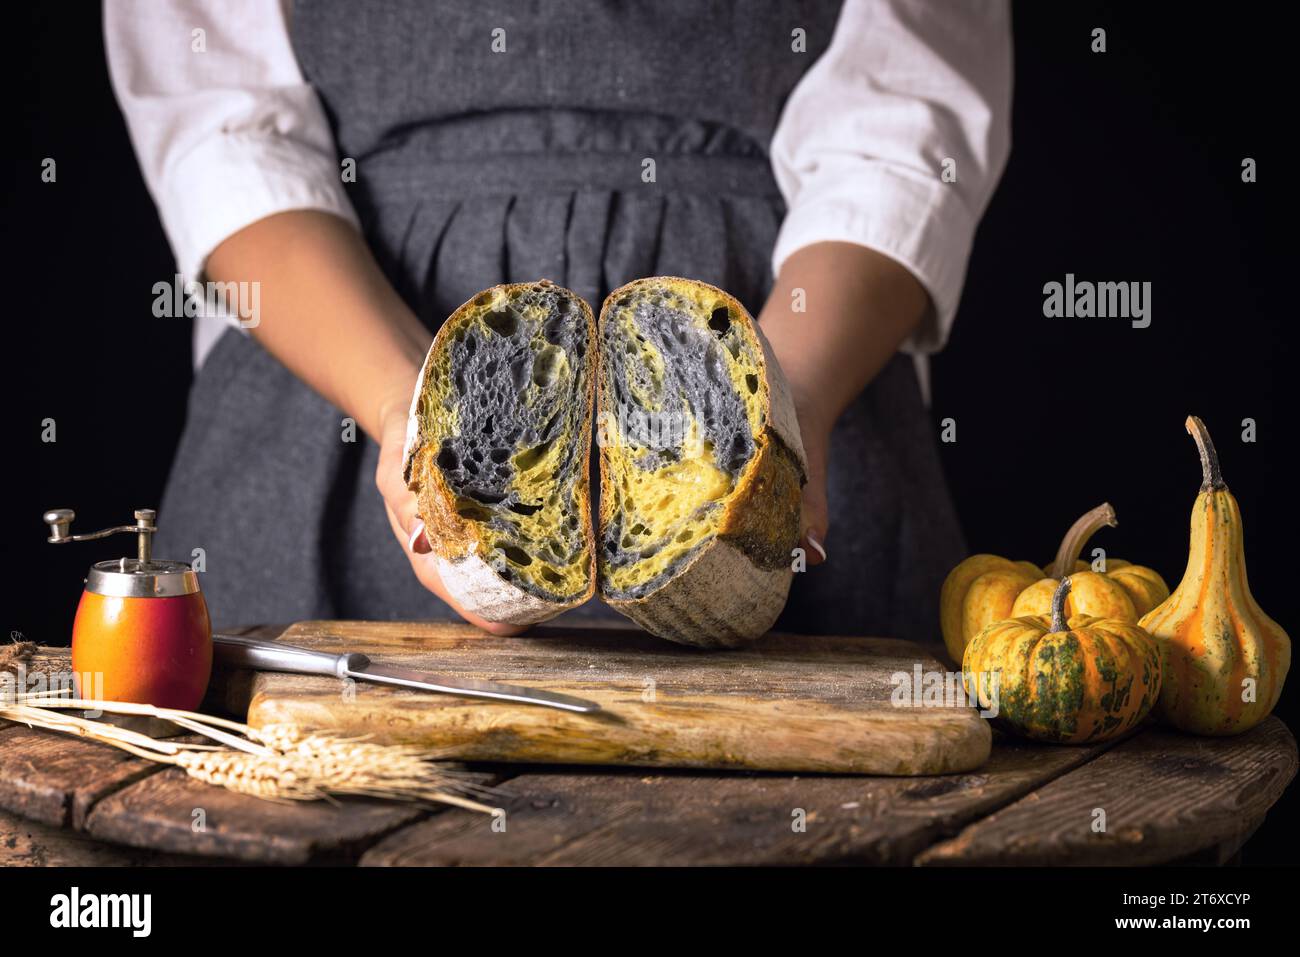 Masa madre casera activado carbón negro pan con calabaza horno de cúrcuma horneado y ama de casa mujer panadero con comida de otoño, estilo rústico antiguo Foto de stock